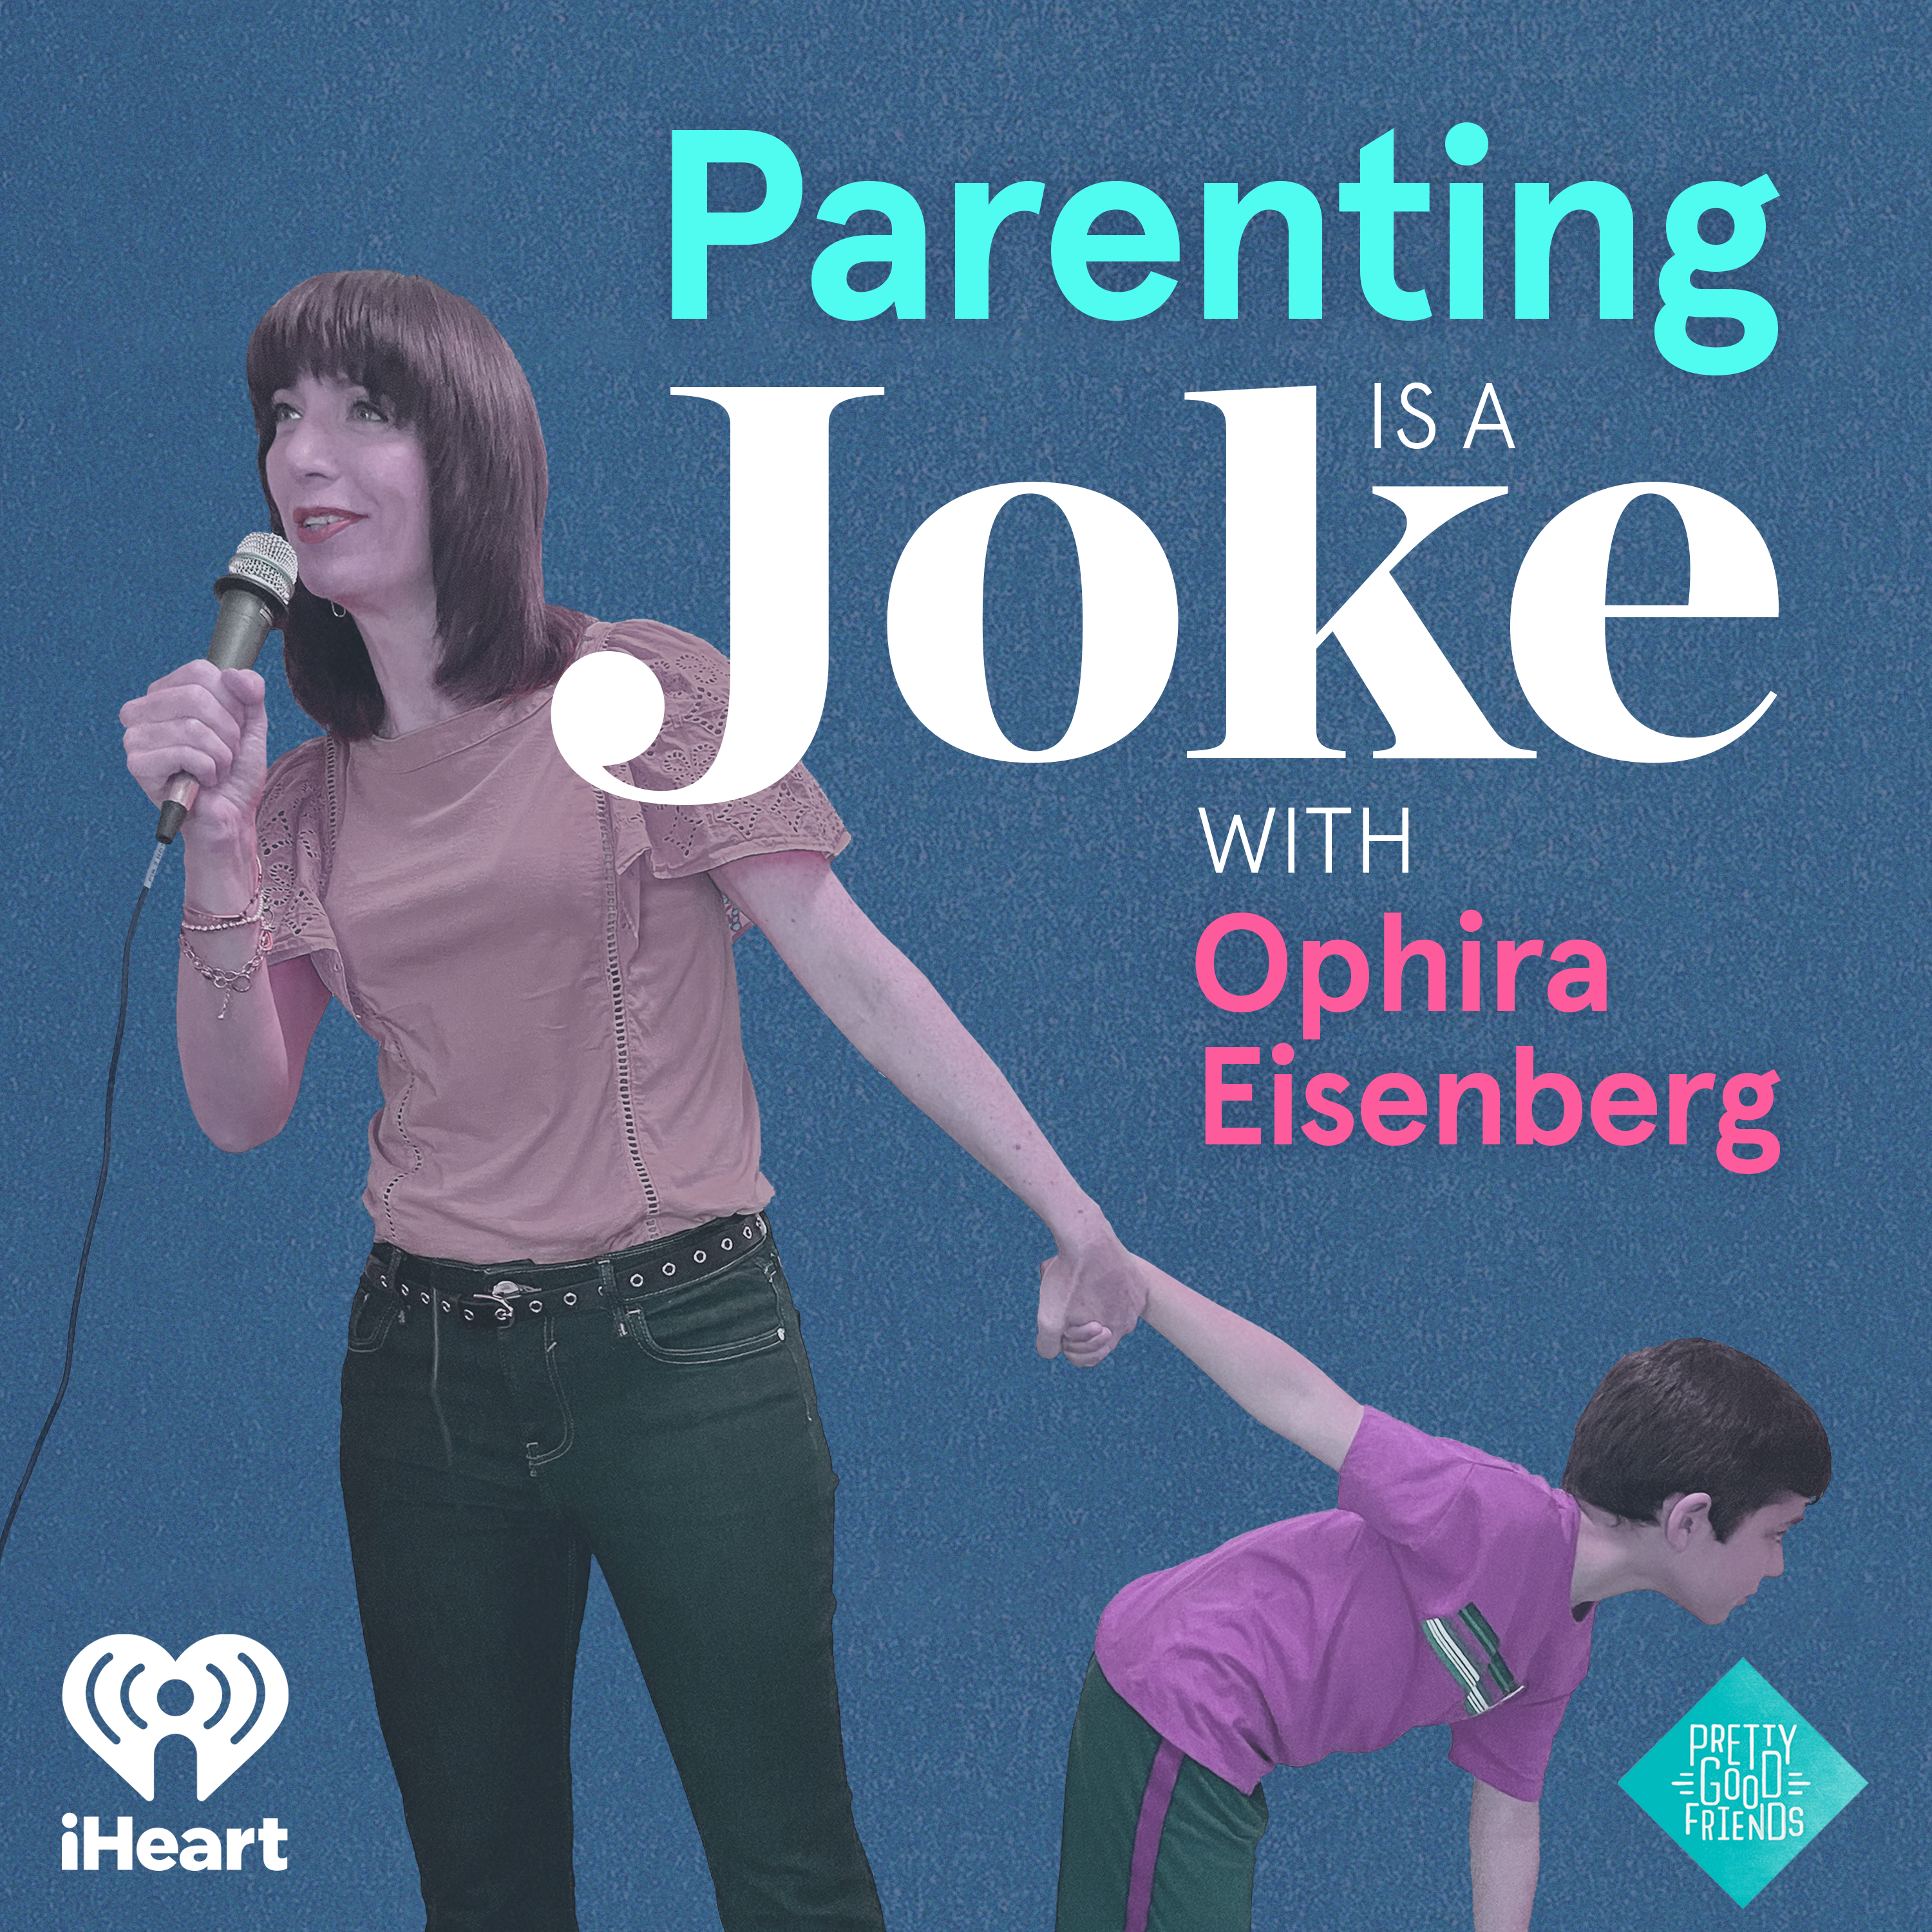 Kristen Schaal: Parenting is Not Funny